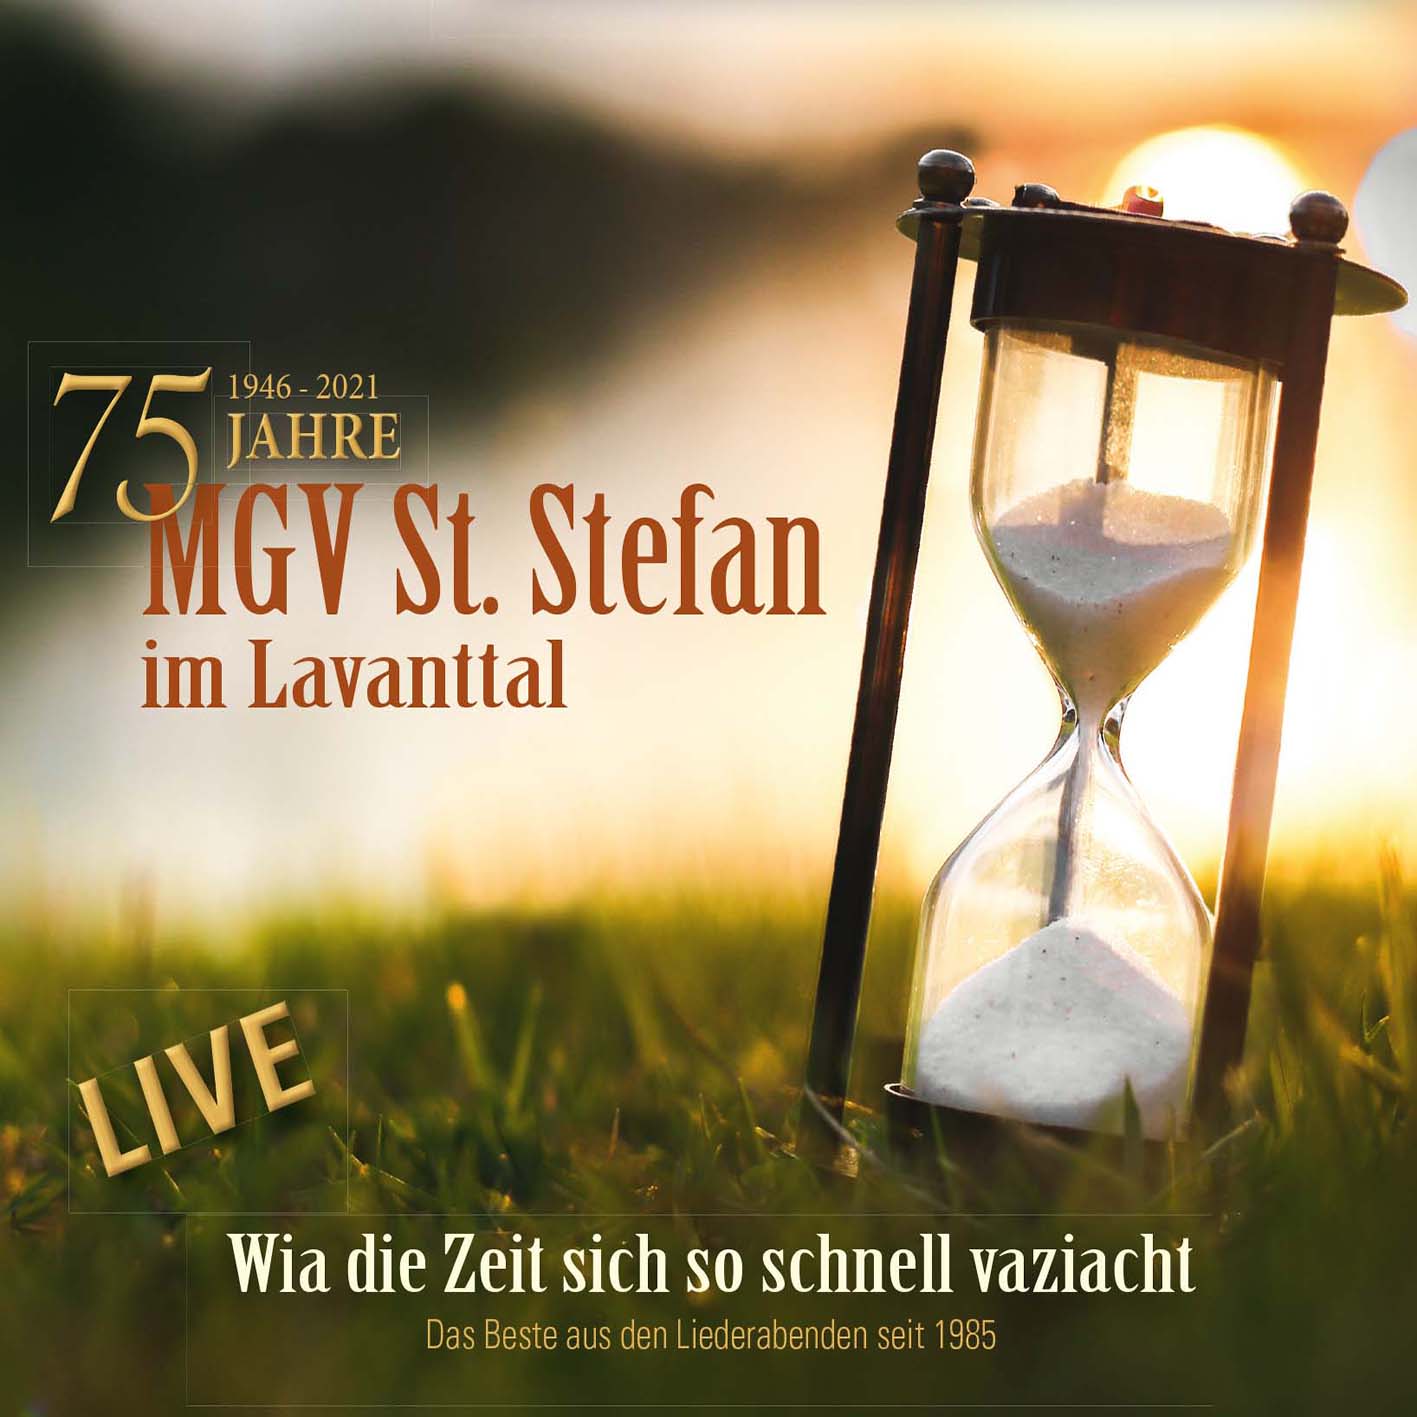 DRCD-2102 MGV St. Stefan im Lavanttal "Wia die Zeit sich so schnell vaziacht"